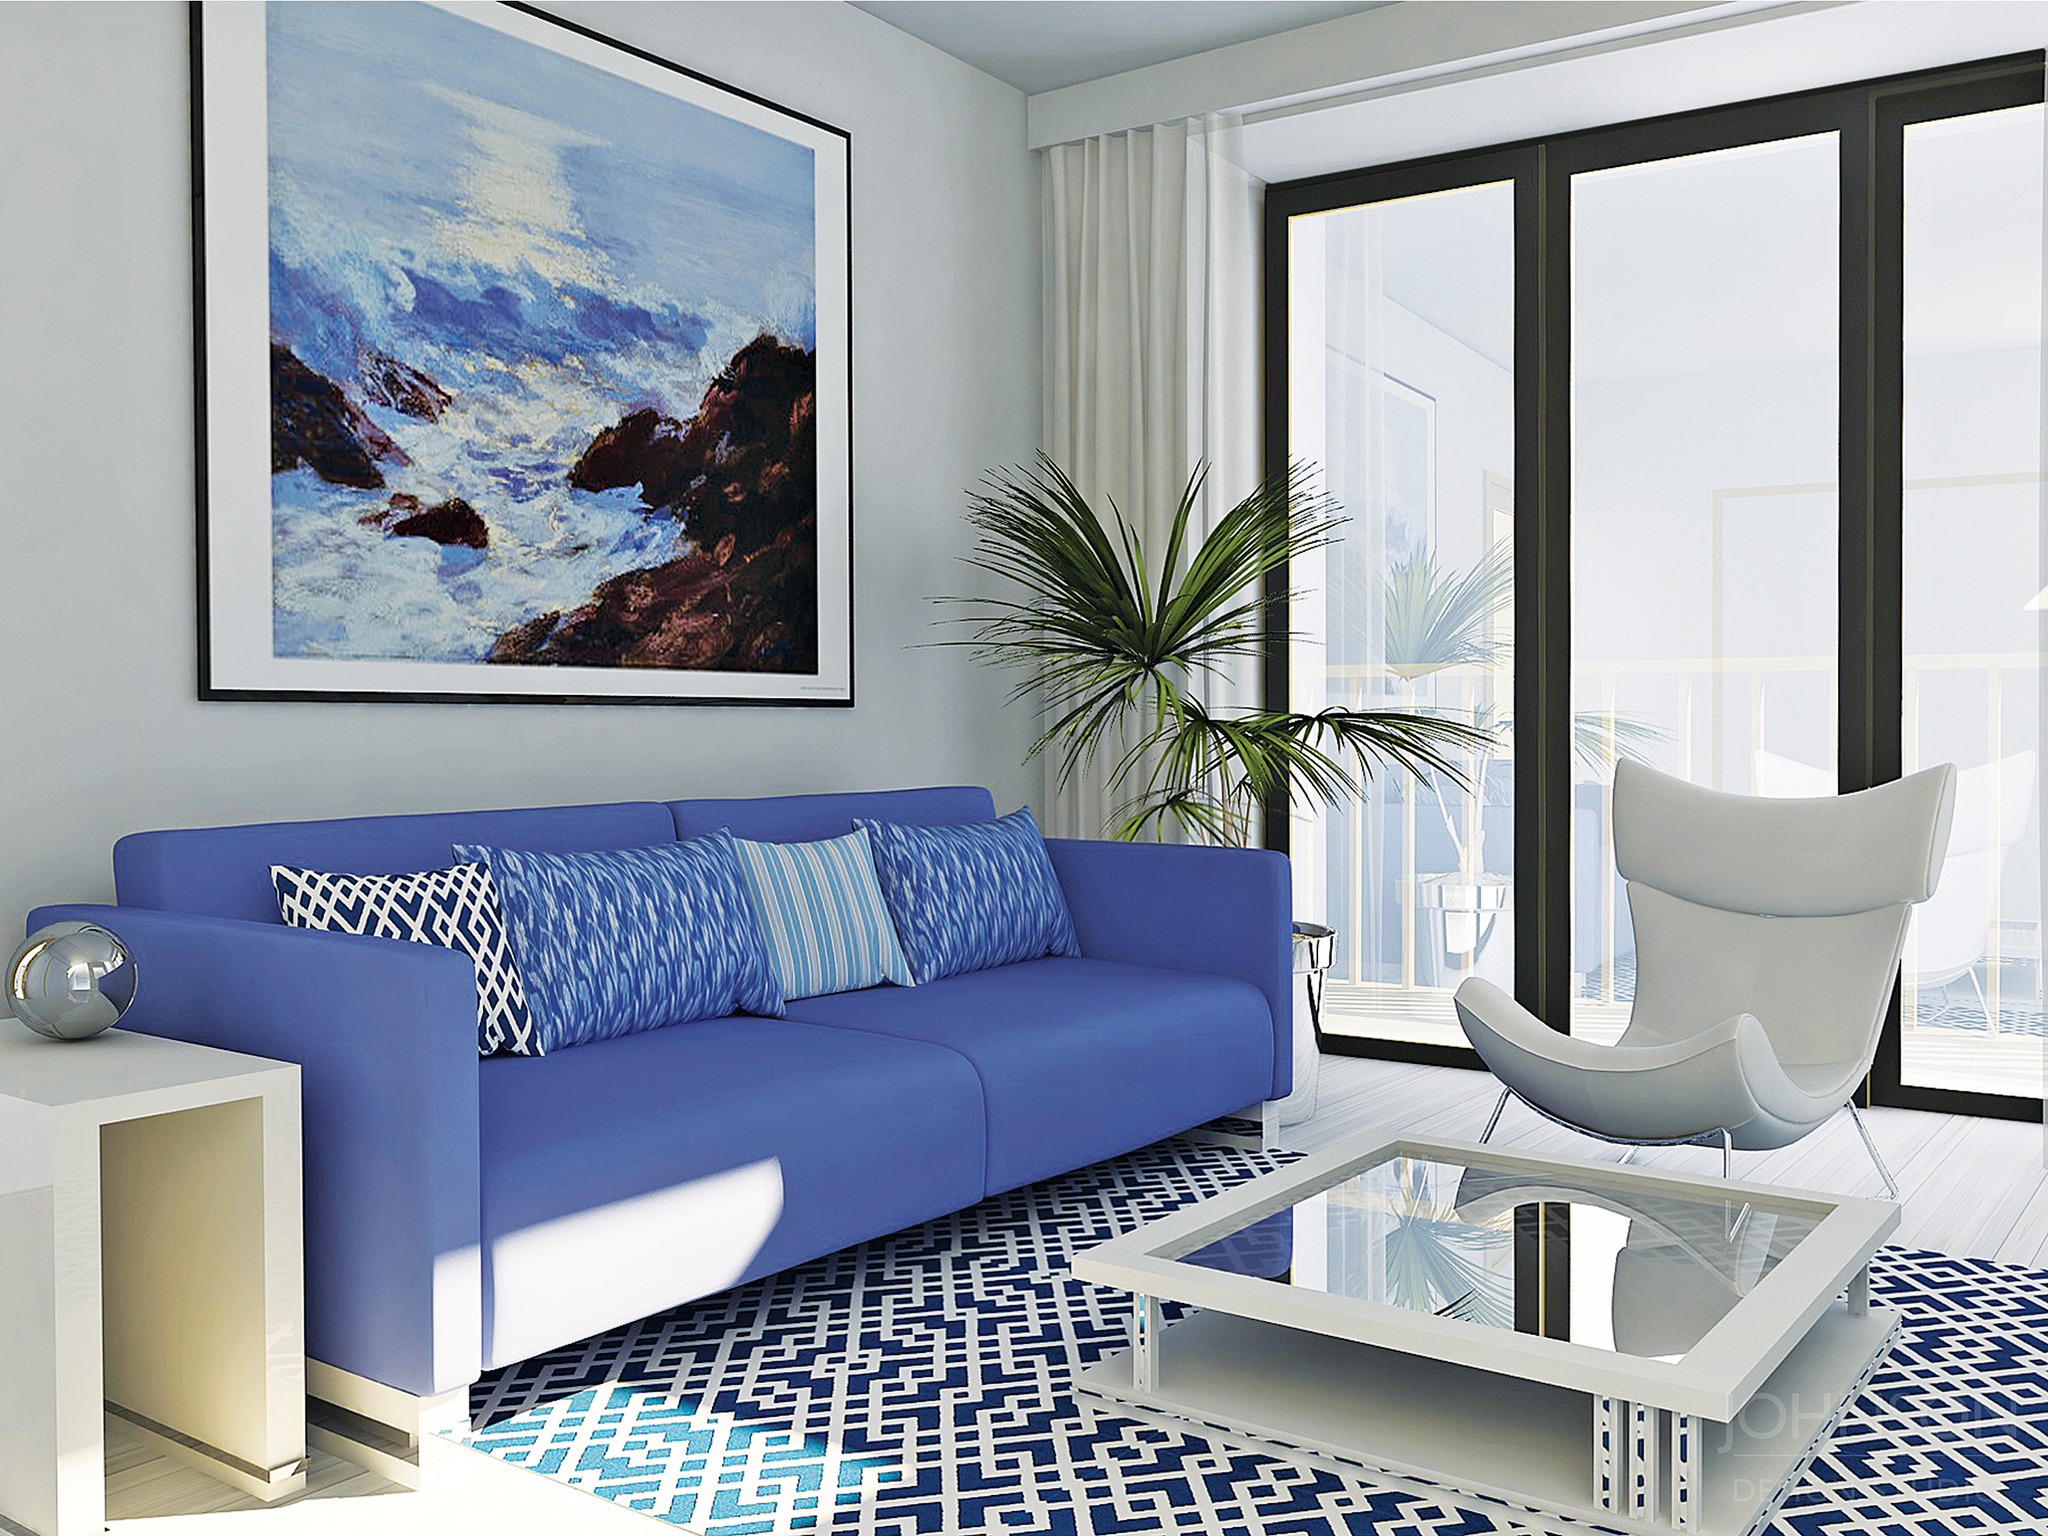 Interior design of a PassivHaus apartment in blue